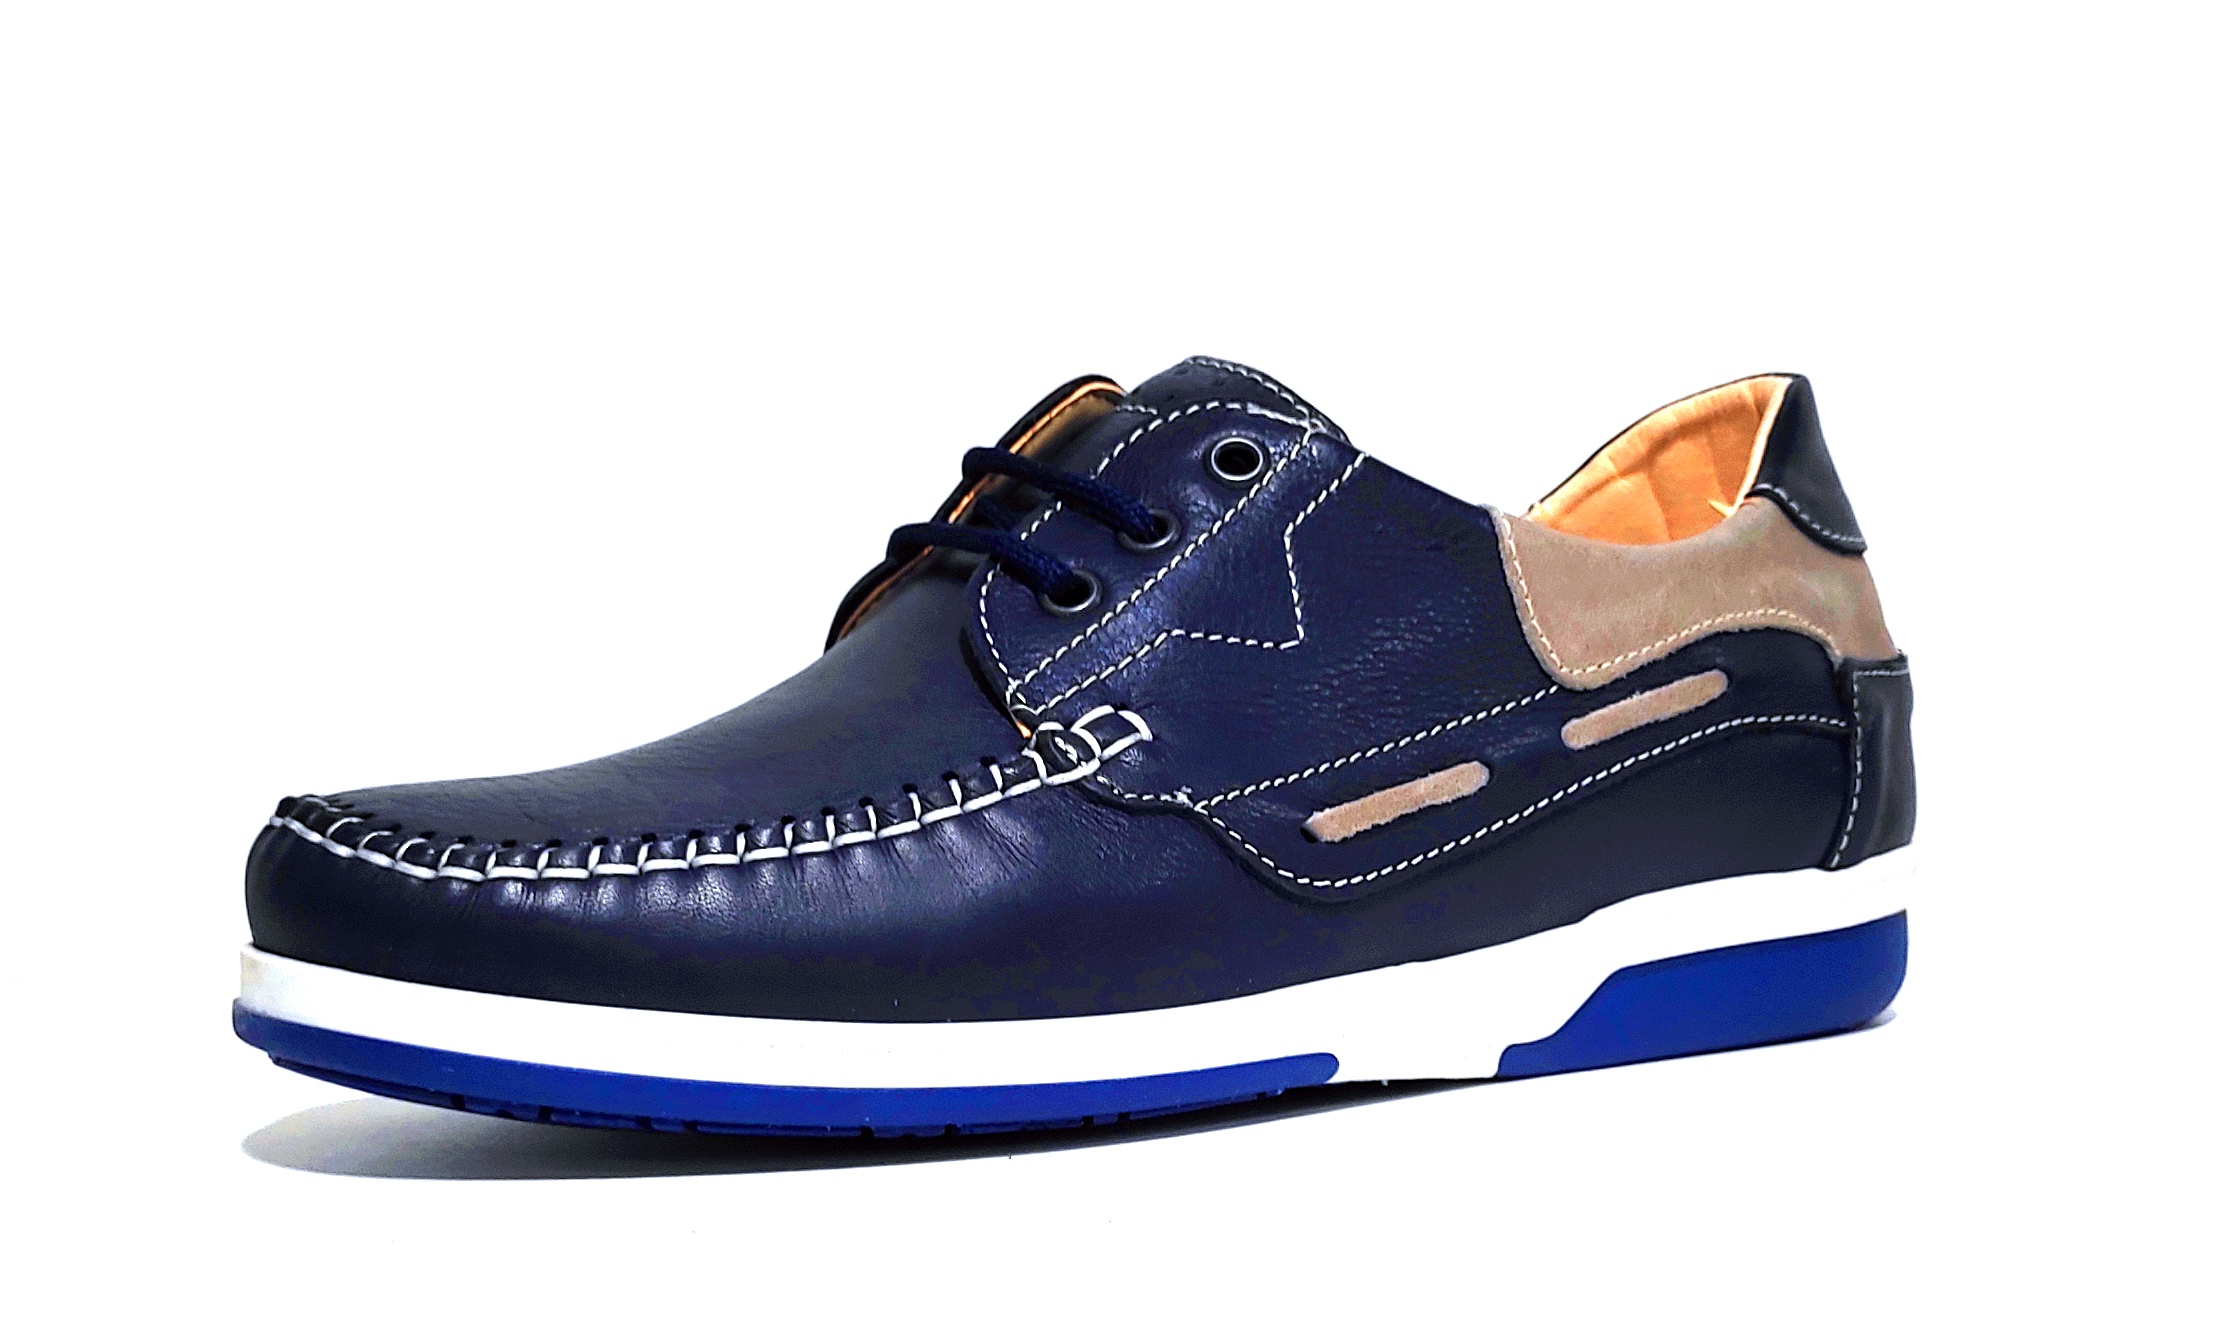 pronto moda crispino 410 scarpa blu vera pelle allacciata uomo estate scarpe mad - Photo 1/1